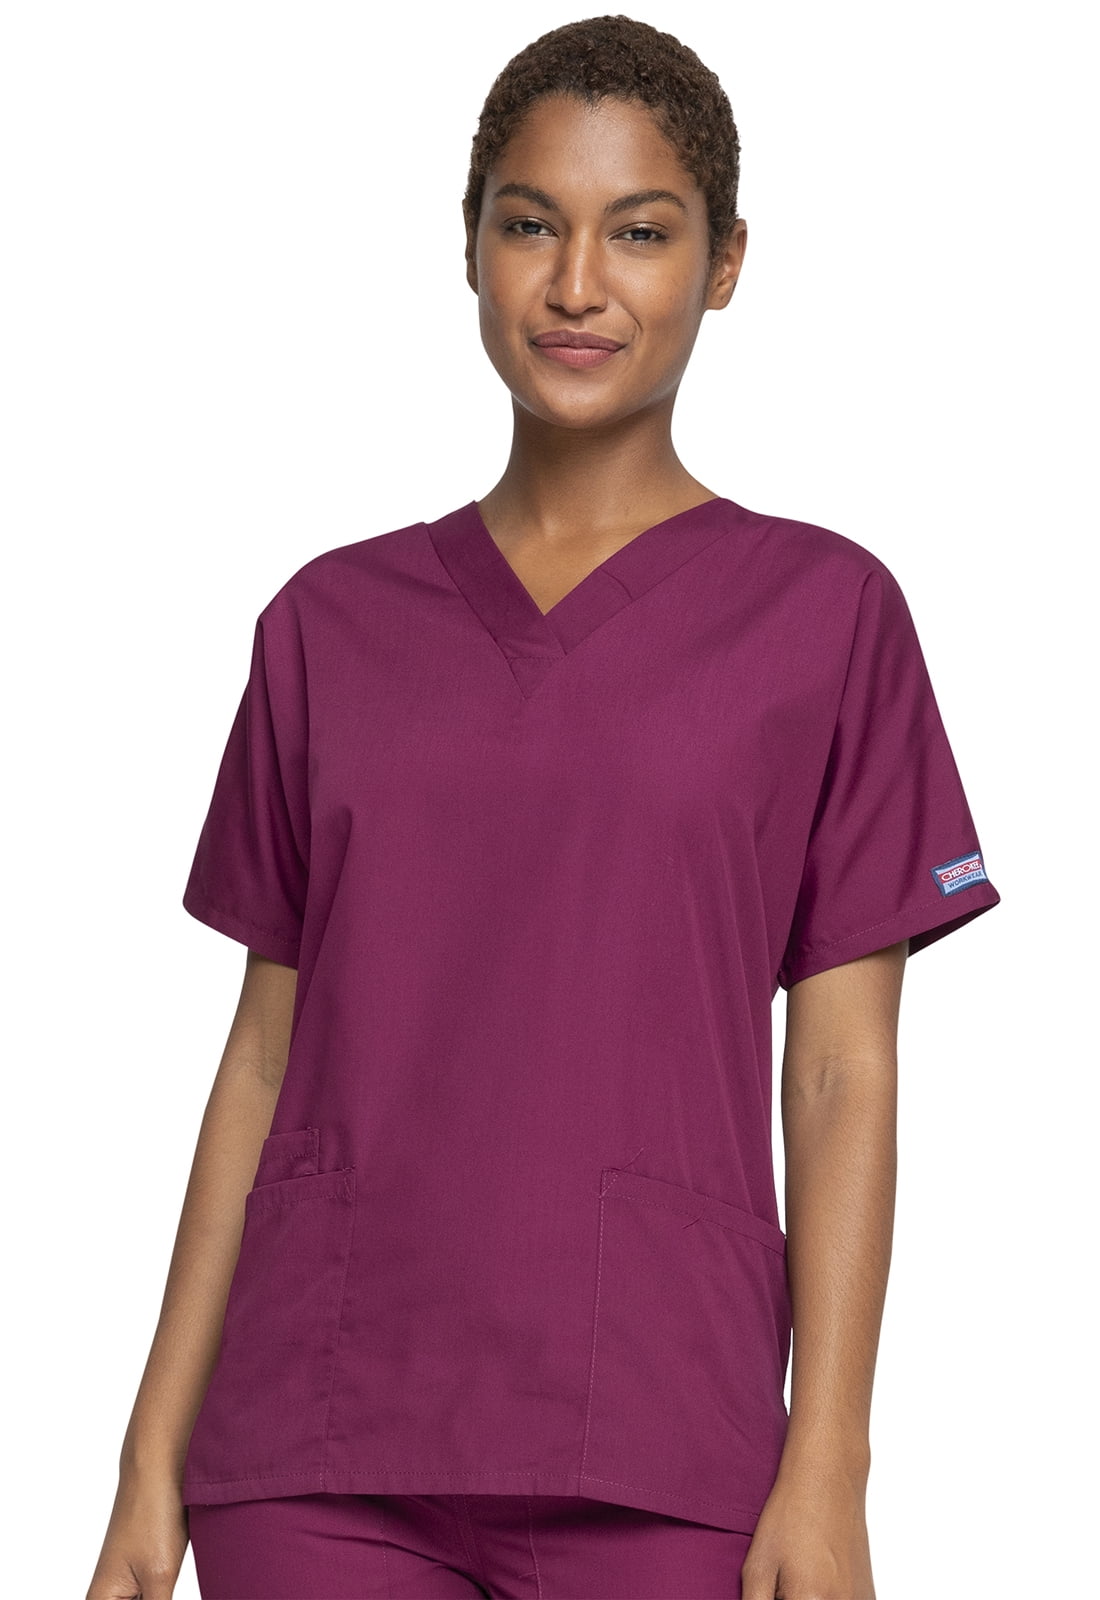 Details about   CHEROKEE Workwear #4700 scrubs top dental medical nurse blue 3 pocket v-neck S 